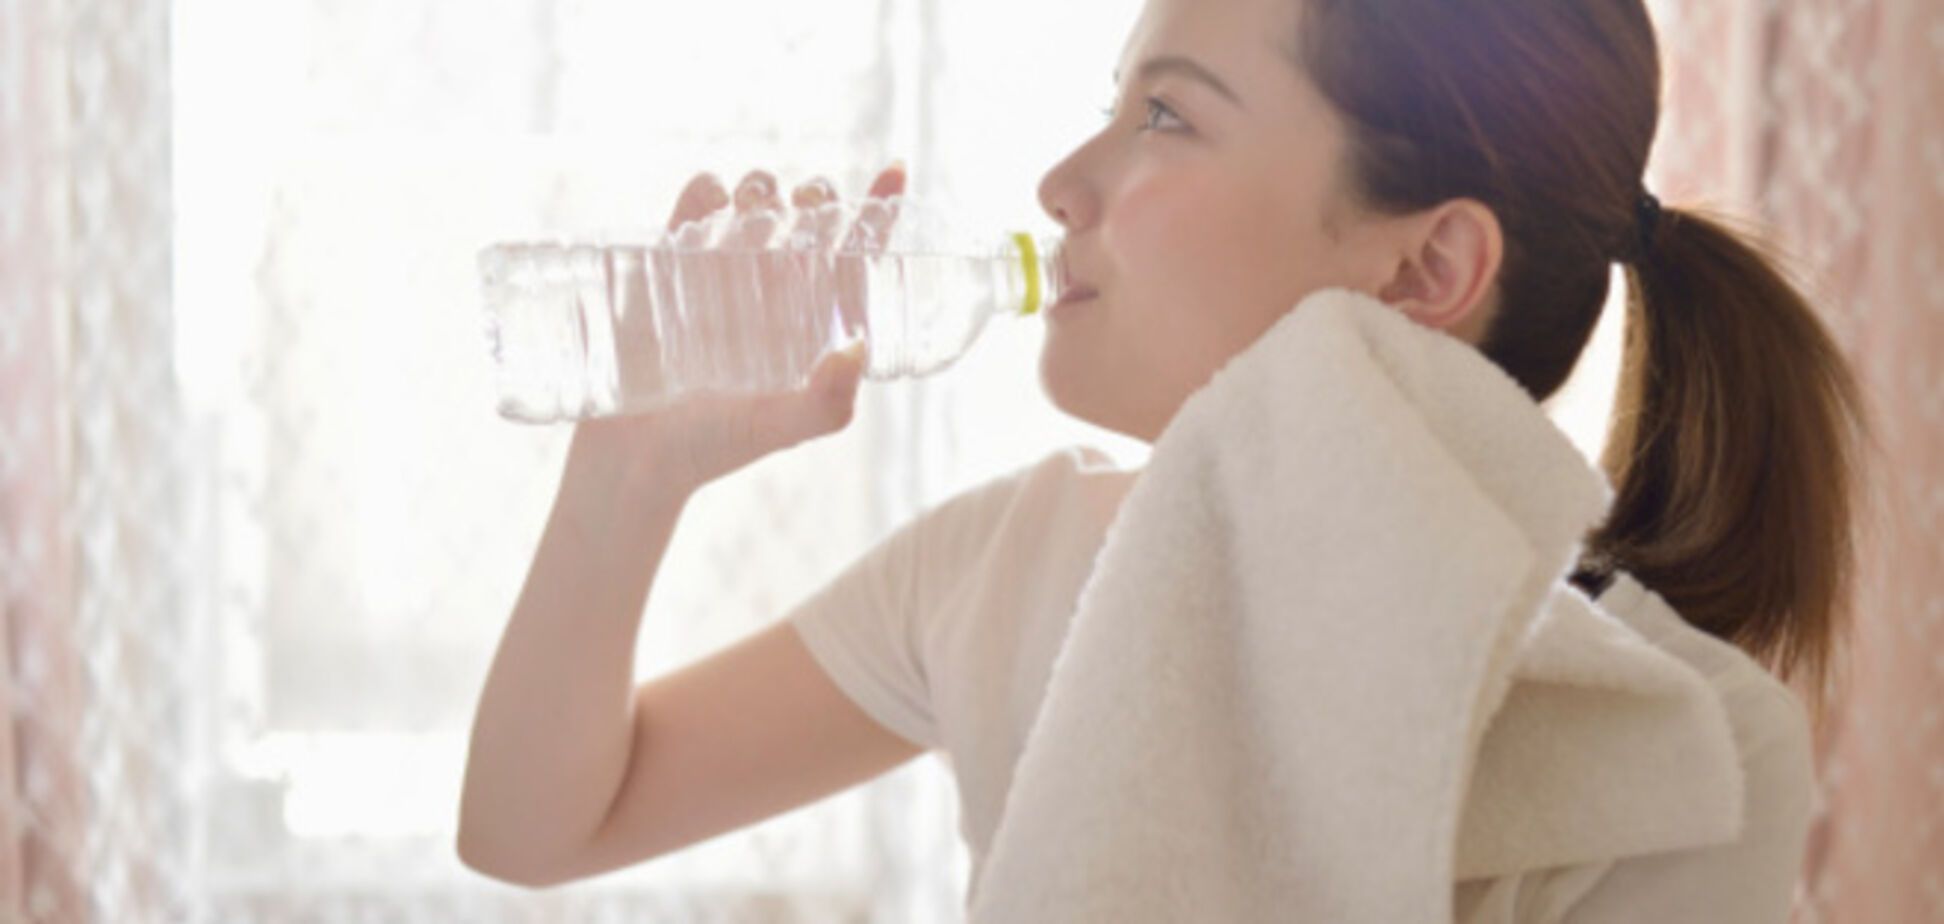 Чтобы быть здоровым, воду нужно пить только теплой